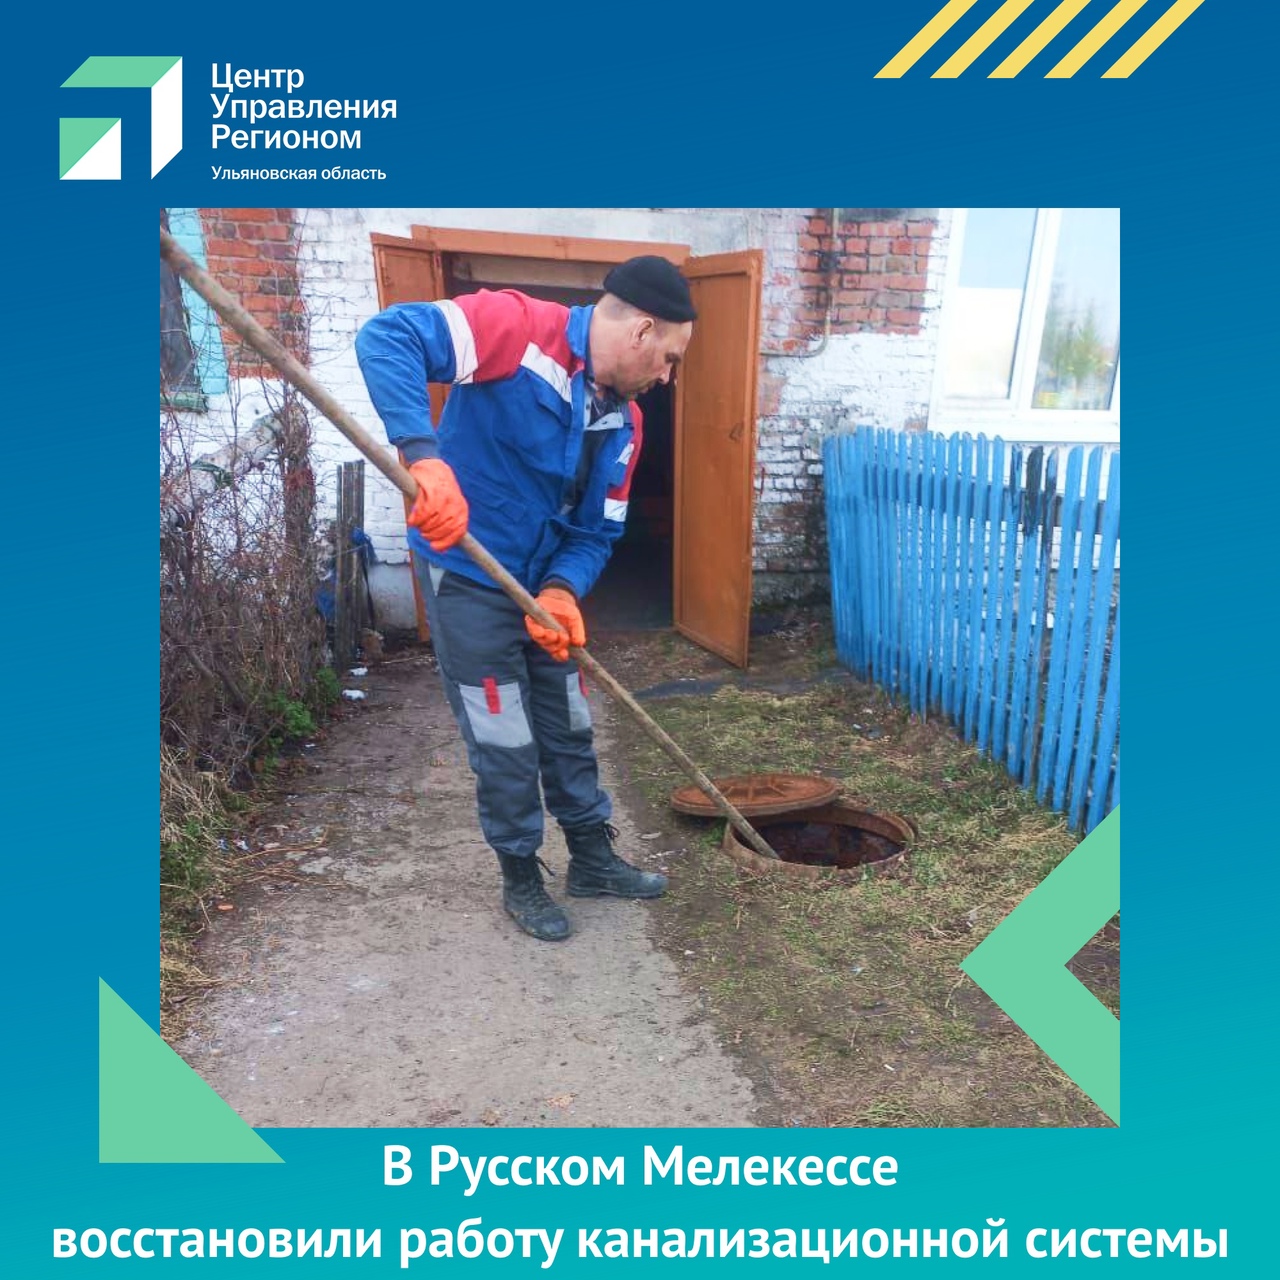 В Русском Мелекессе восстановили работу канализационной системы.